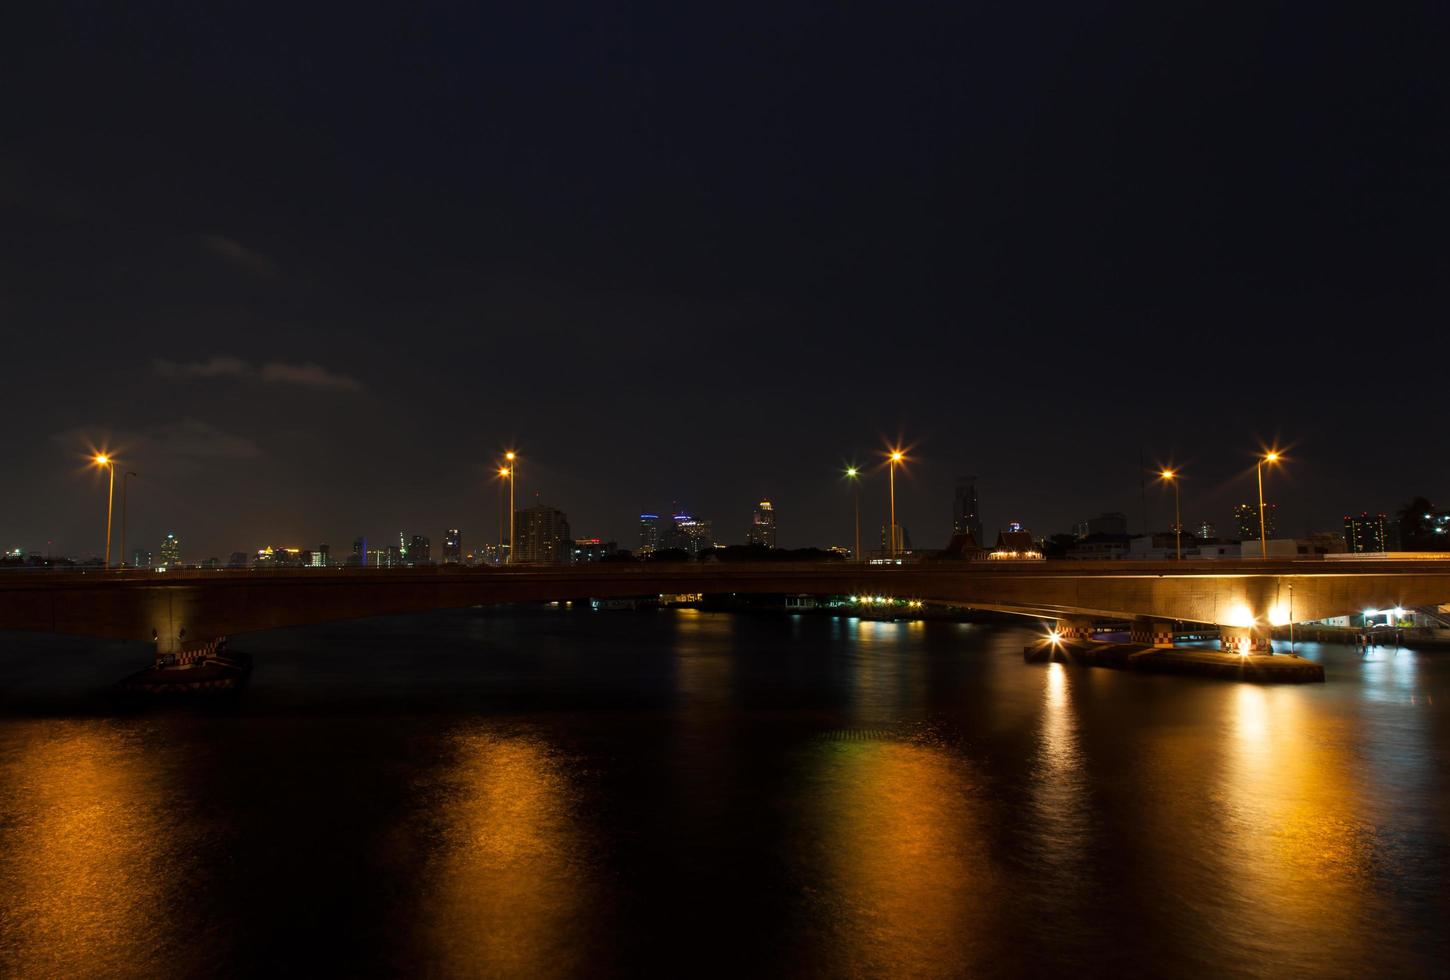 pont sur la rivière la nuit photo